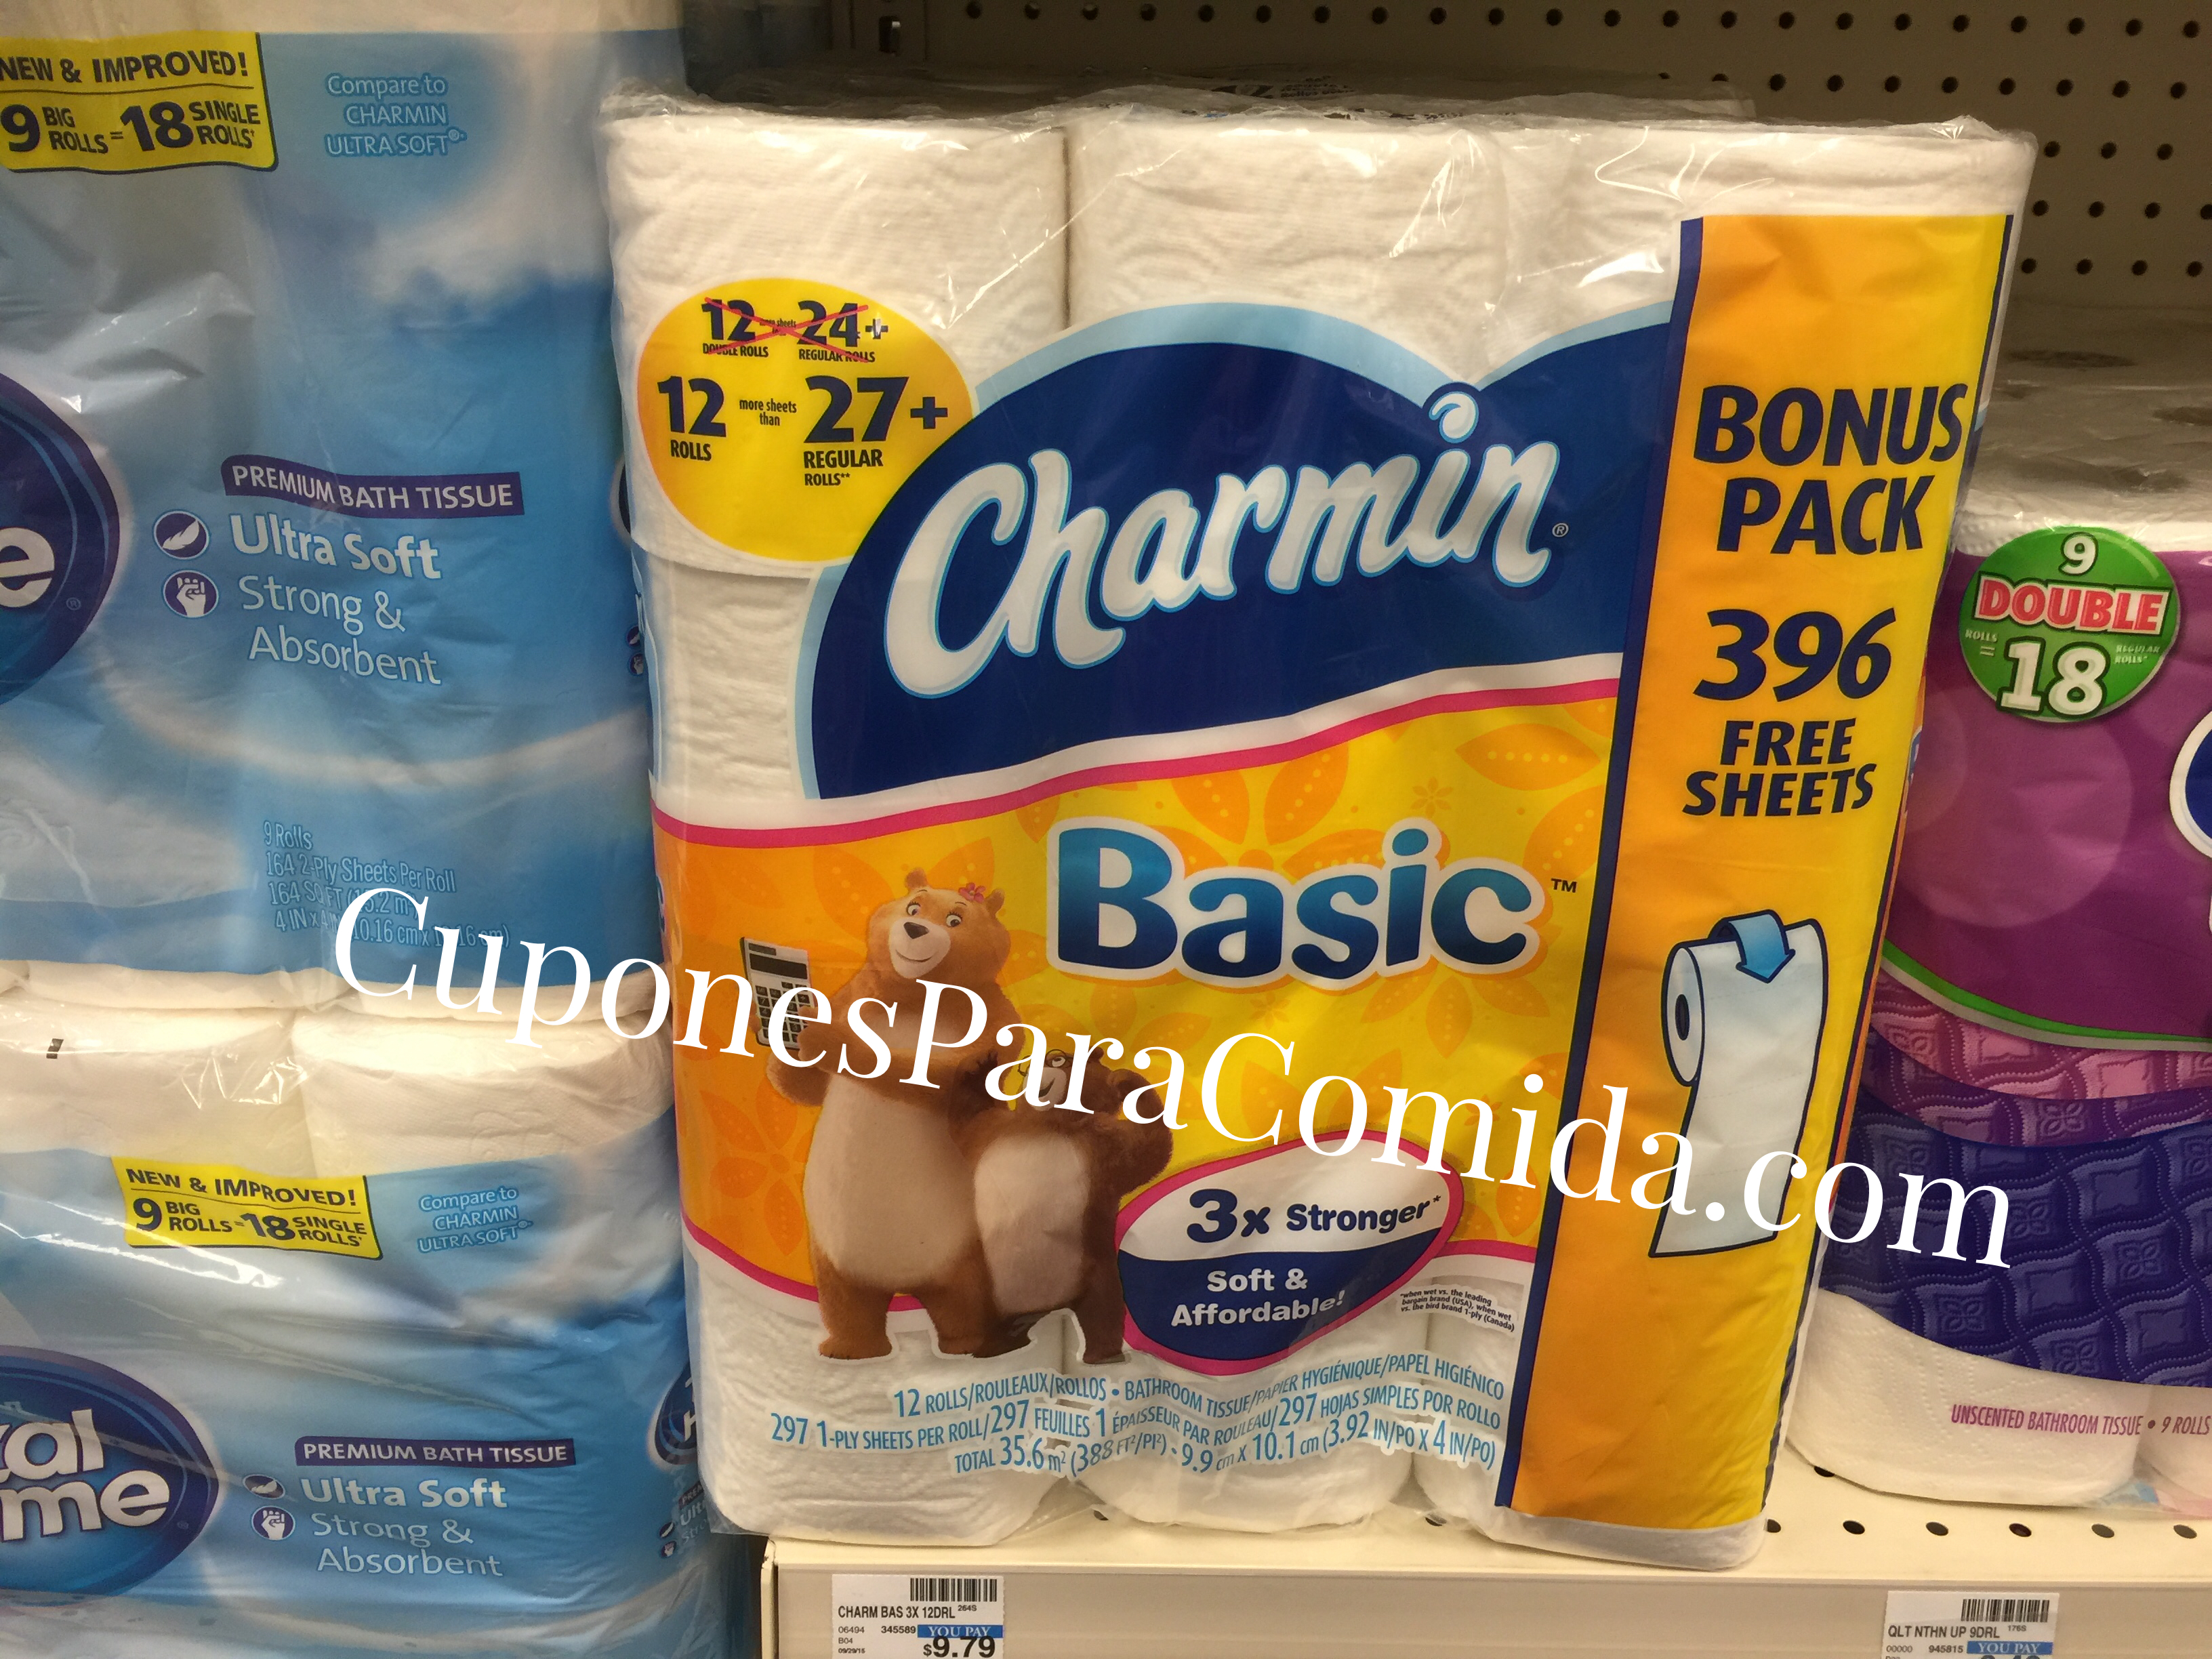 Charming Basic bath tissue 12 rolls - 10/29/15